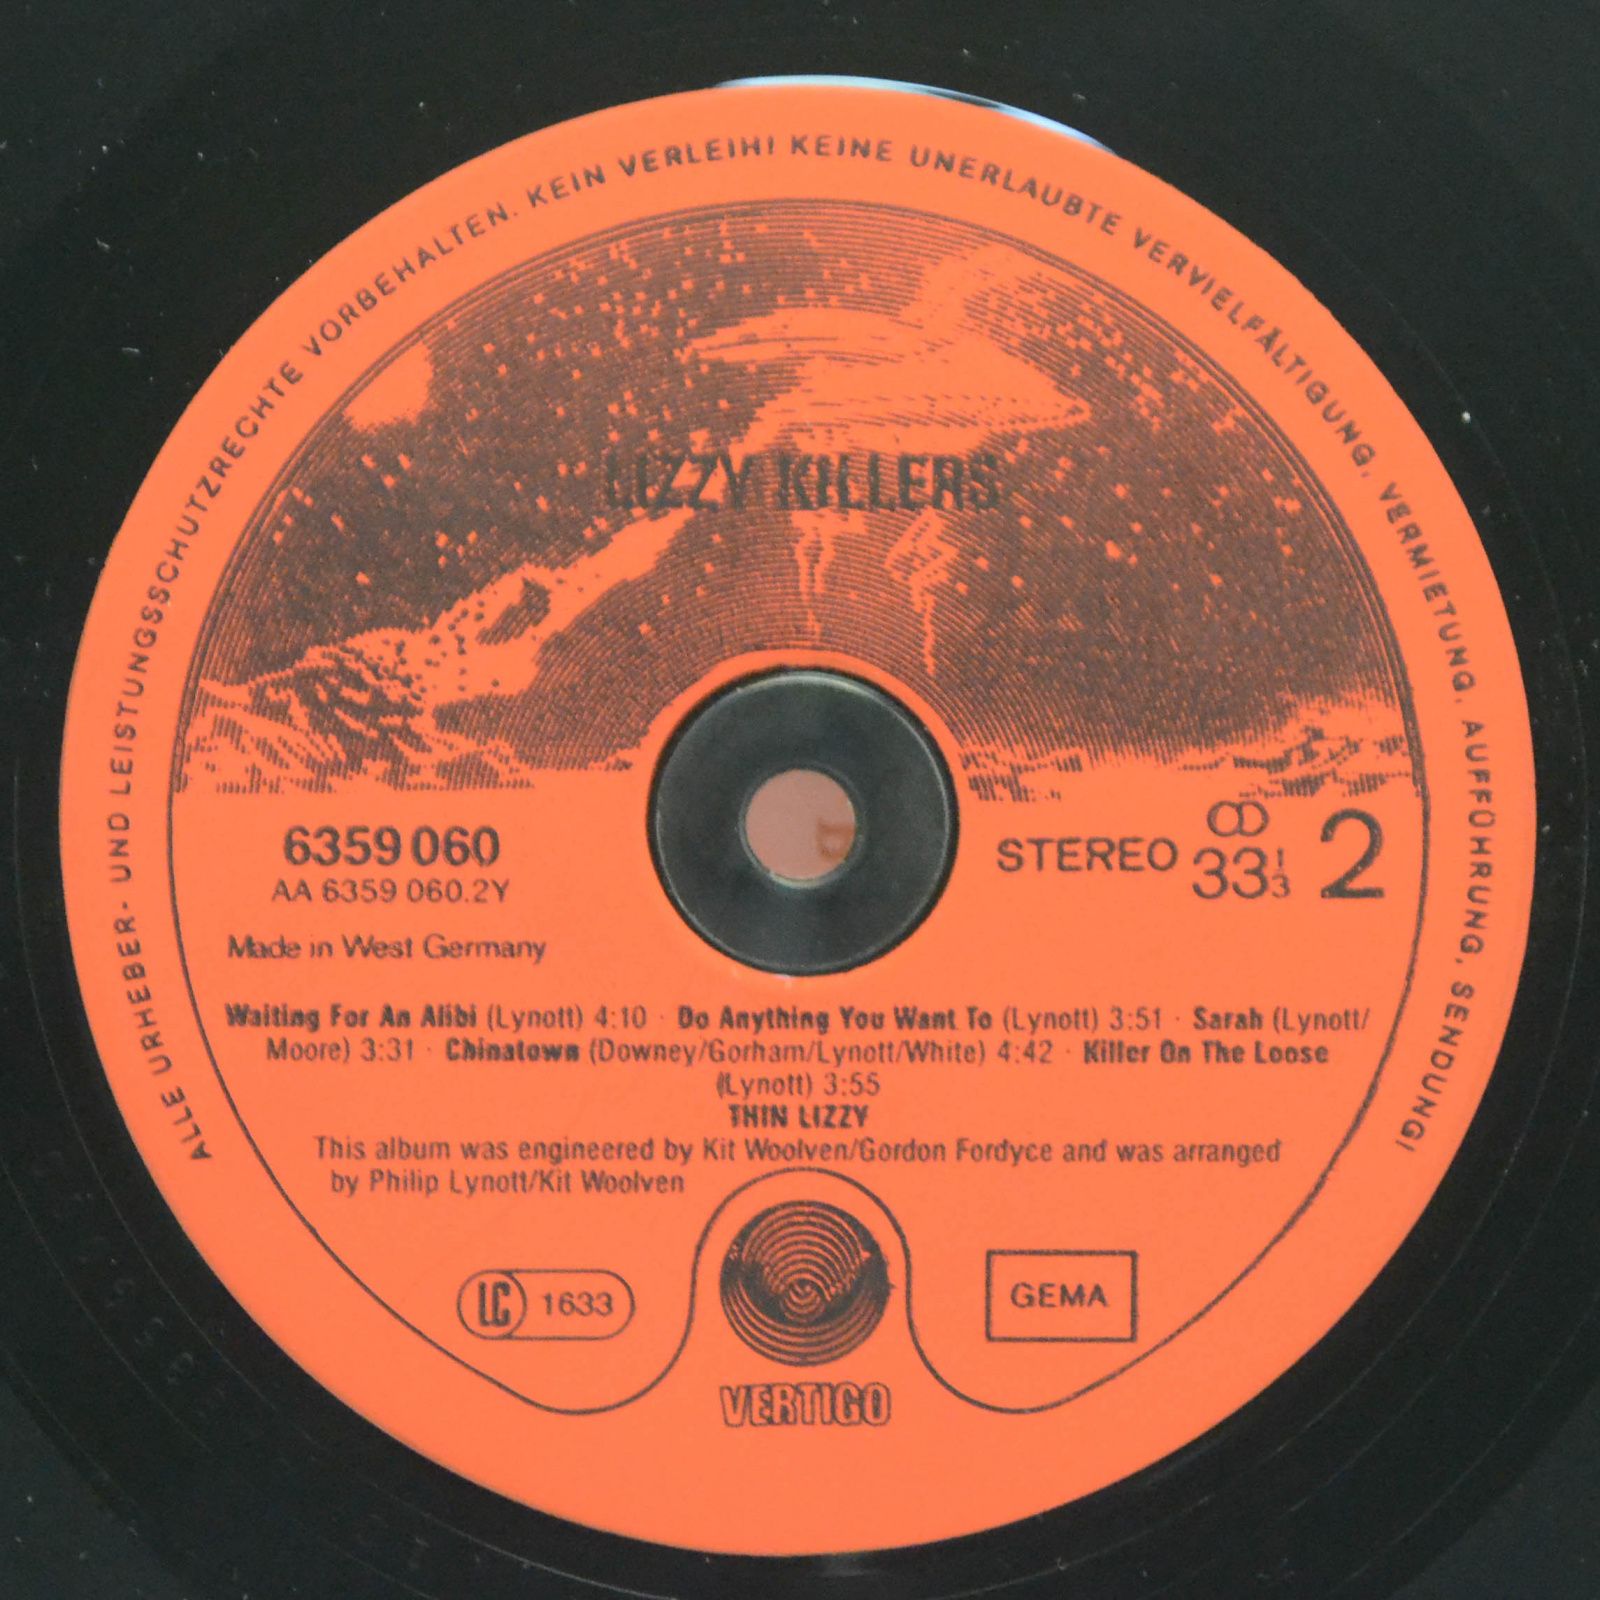 Thin Lizzy — Lizzy Killers, 1981